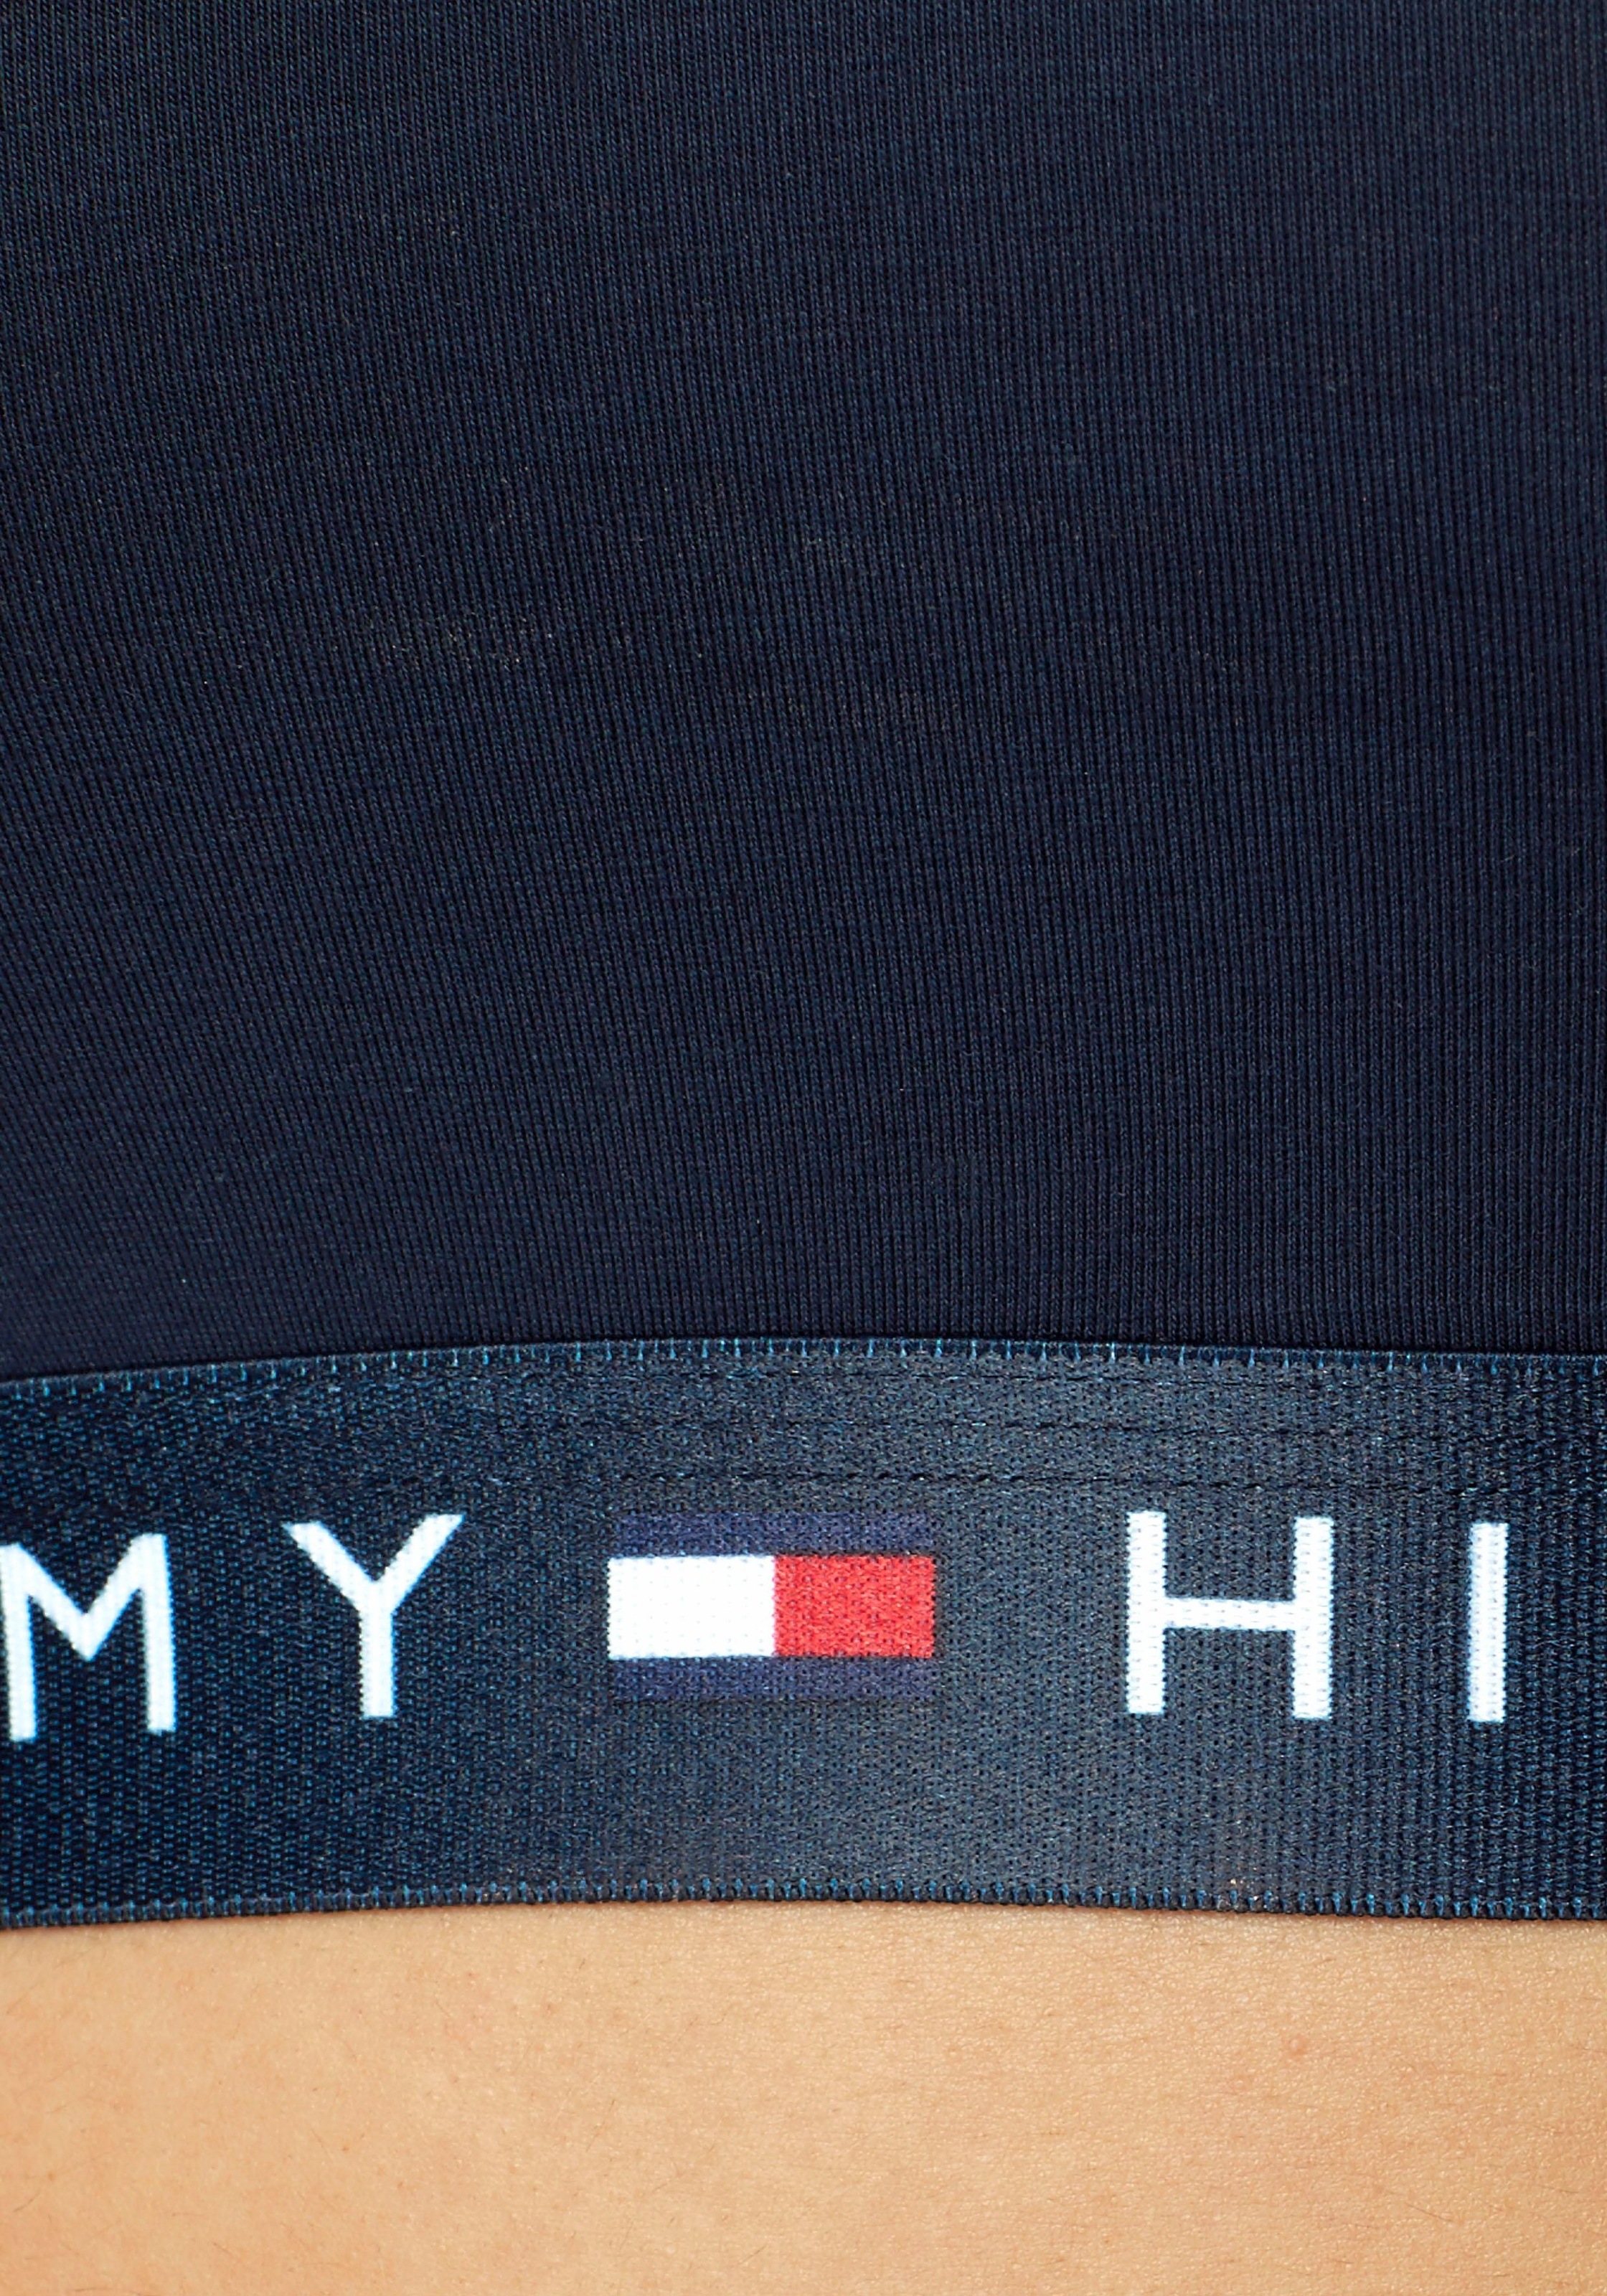 Tommy Hilfiger Underwear Bustier, (1 tlg.), mit leicht transparentem Mesheinsatz